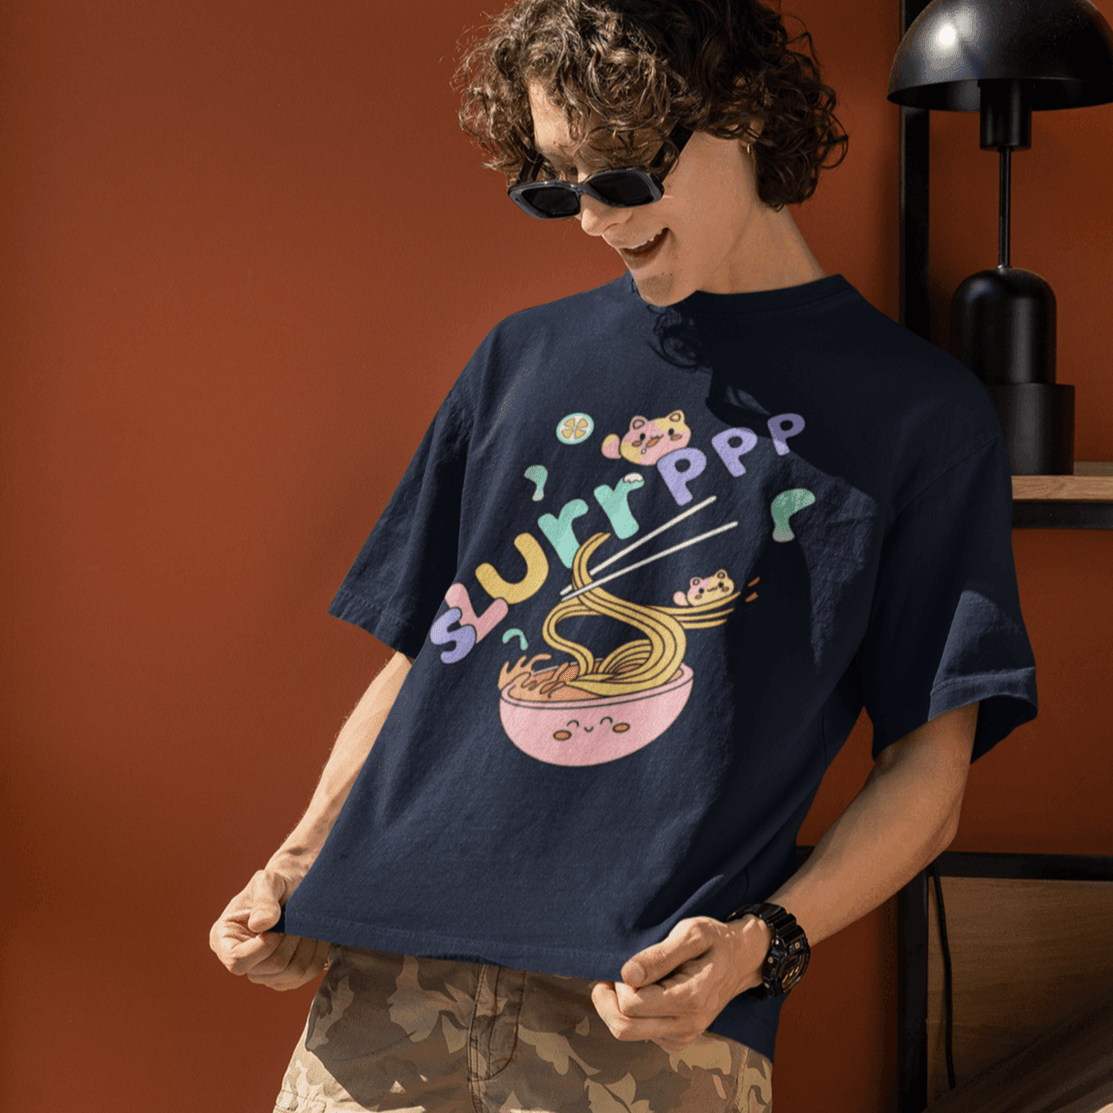 Slurp Oversized T-shirt - Unisex - Cute Stuff India